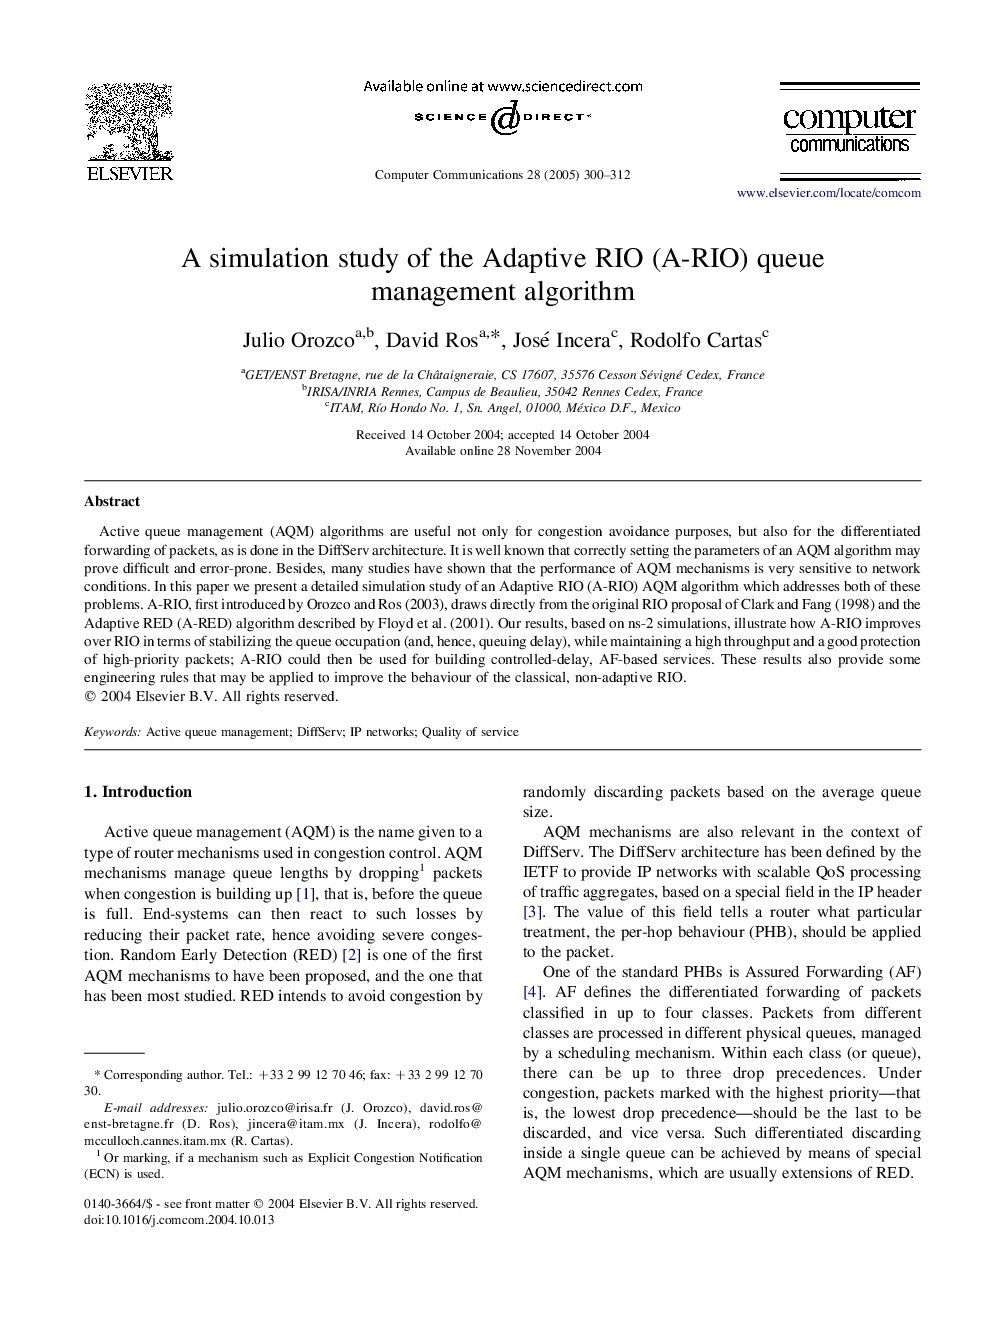 A simulation study of the Adaptive RIO (A-RIO) queue management algorithm